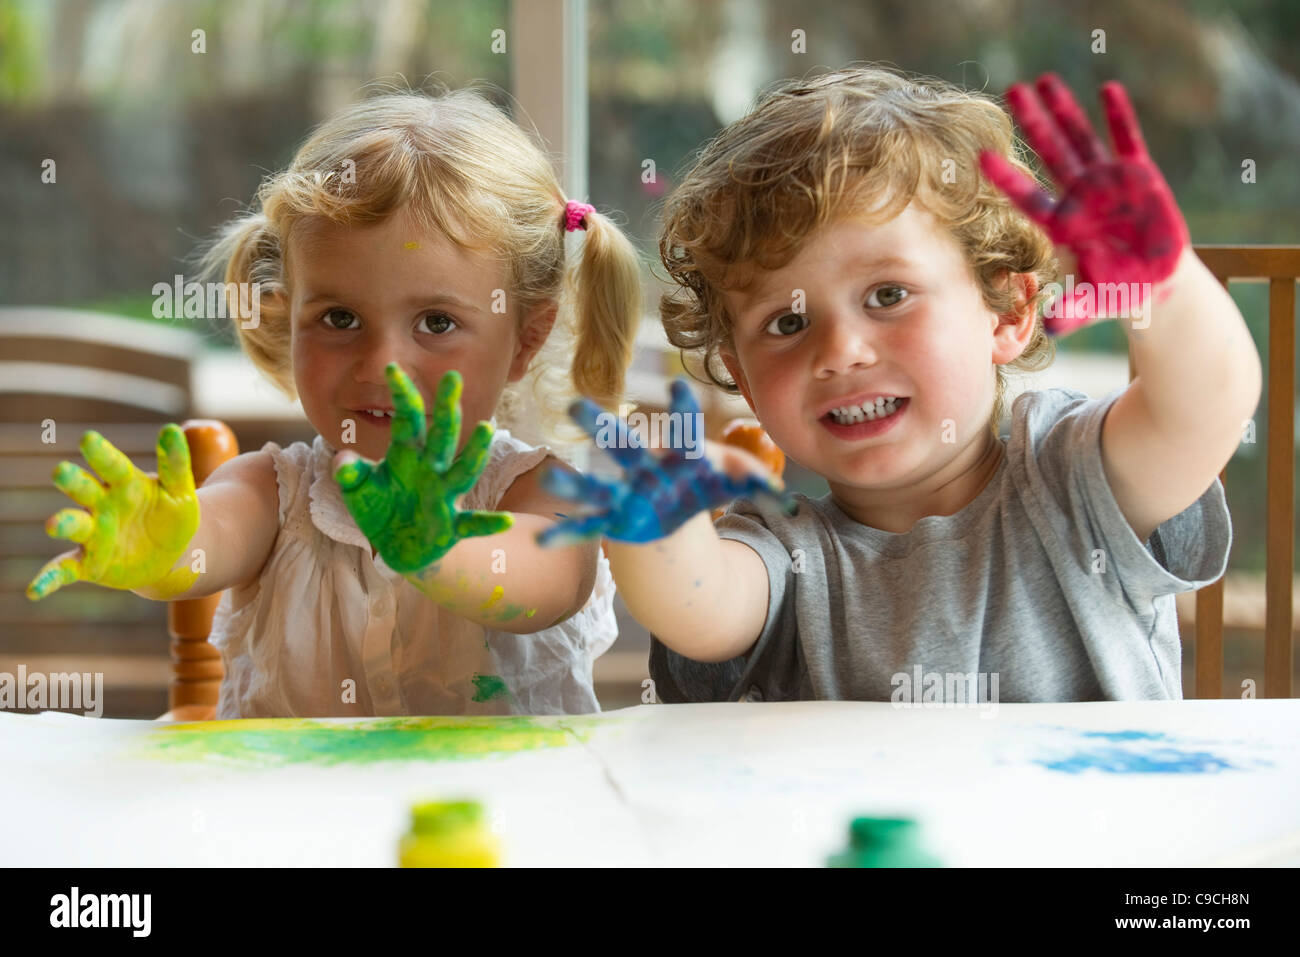 Petite fille et garçon montrant les mains couvertes de peinture, portrait Banque D'Images